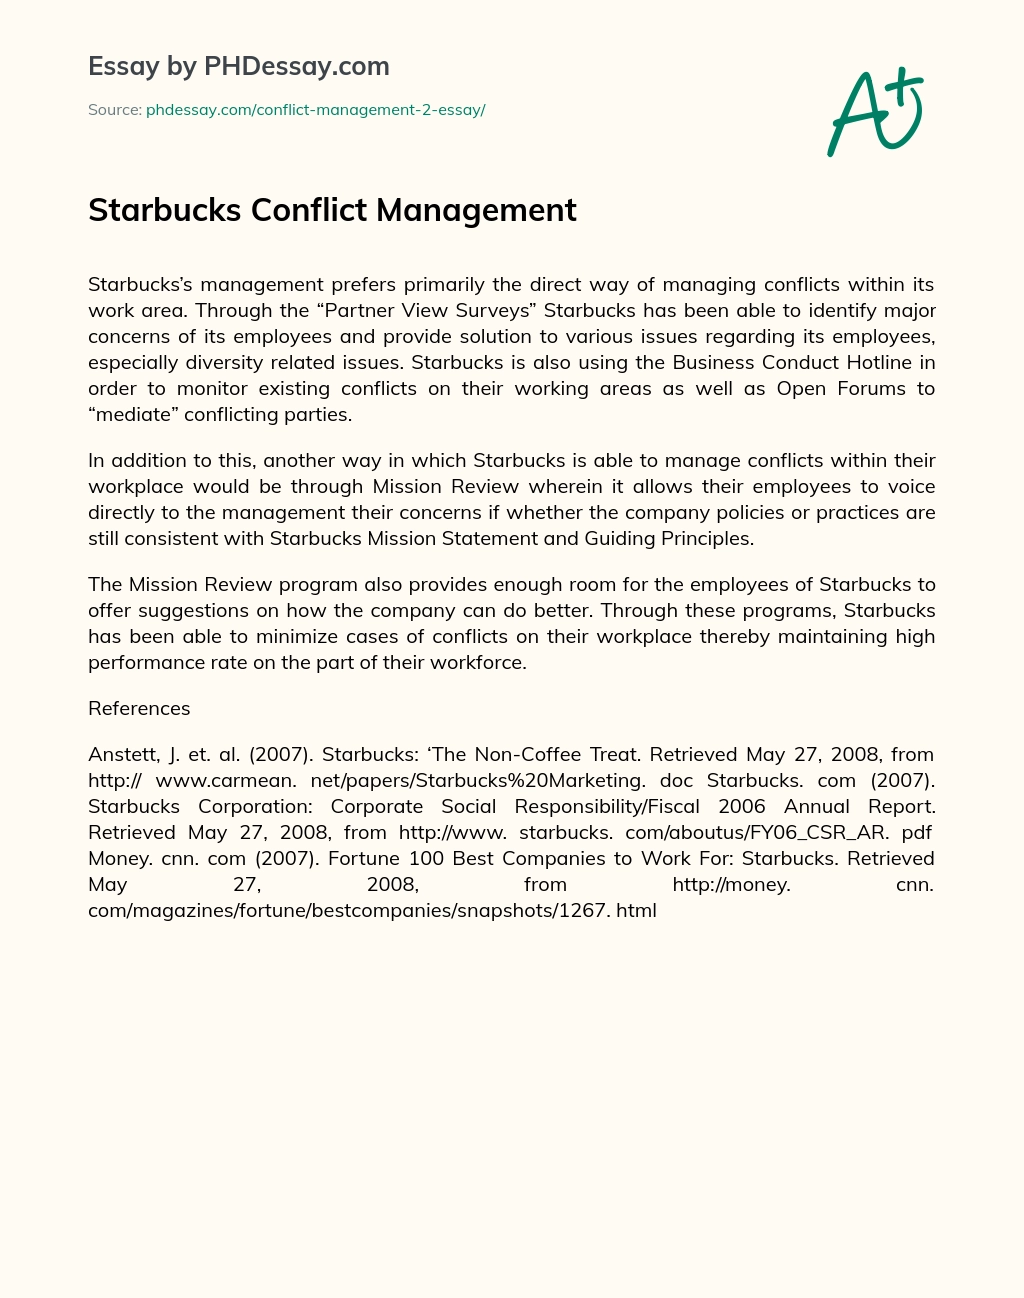 Starbucks Conflict Management essay